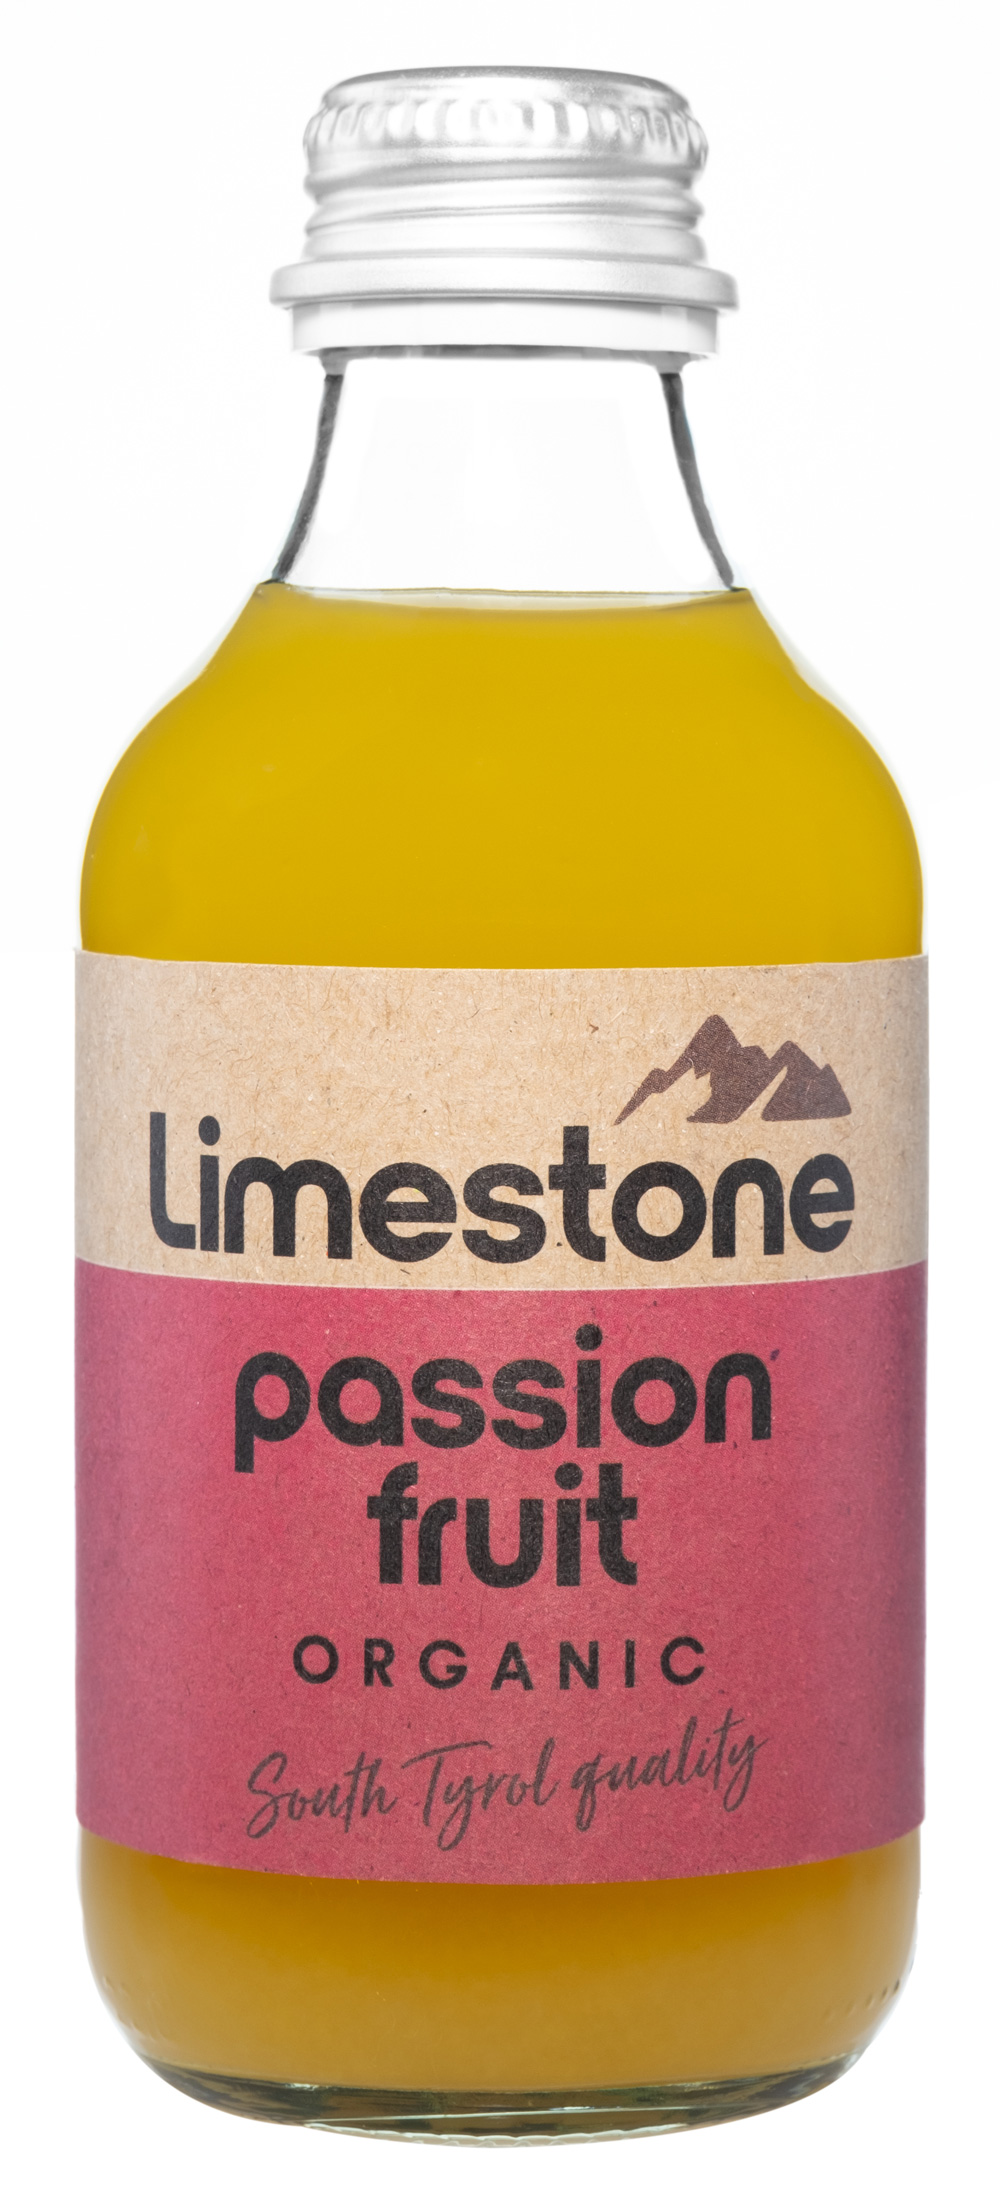 Limestone passion fruit Organic alkoholfrei | 10.1770.01